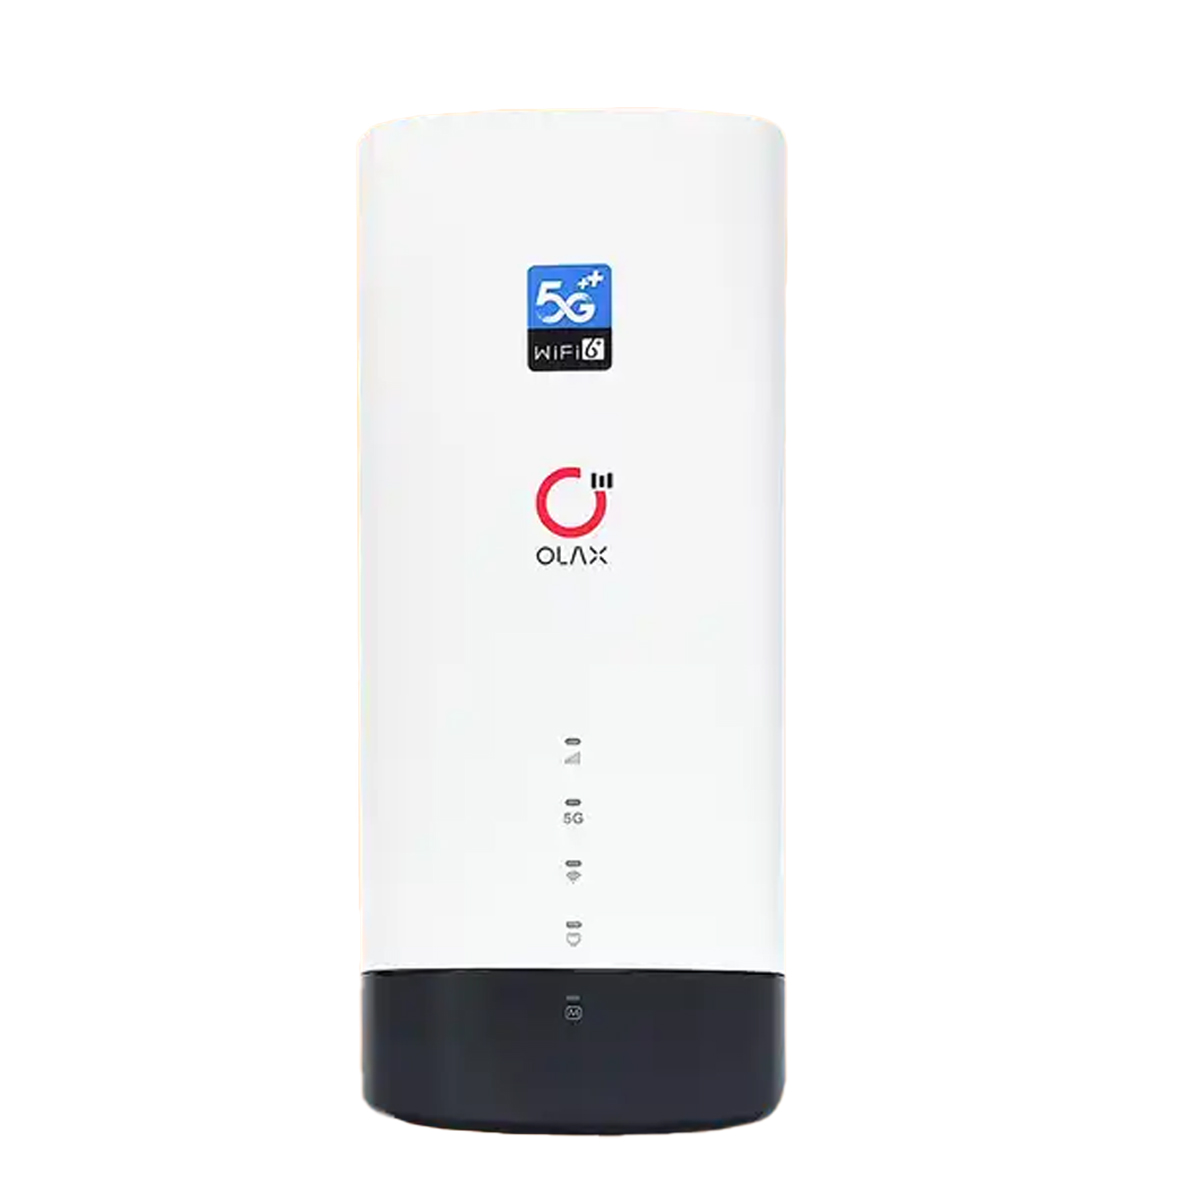 Найкращий 4G роутер з SIM-картою - Olax G5018. Вид роутера спереду. Підтримка 8G на 5G технології. сайті Marketnet